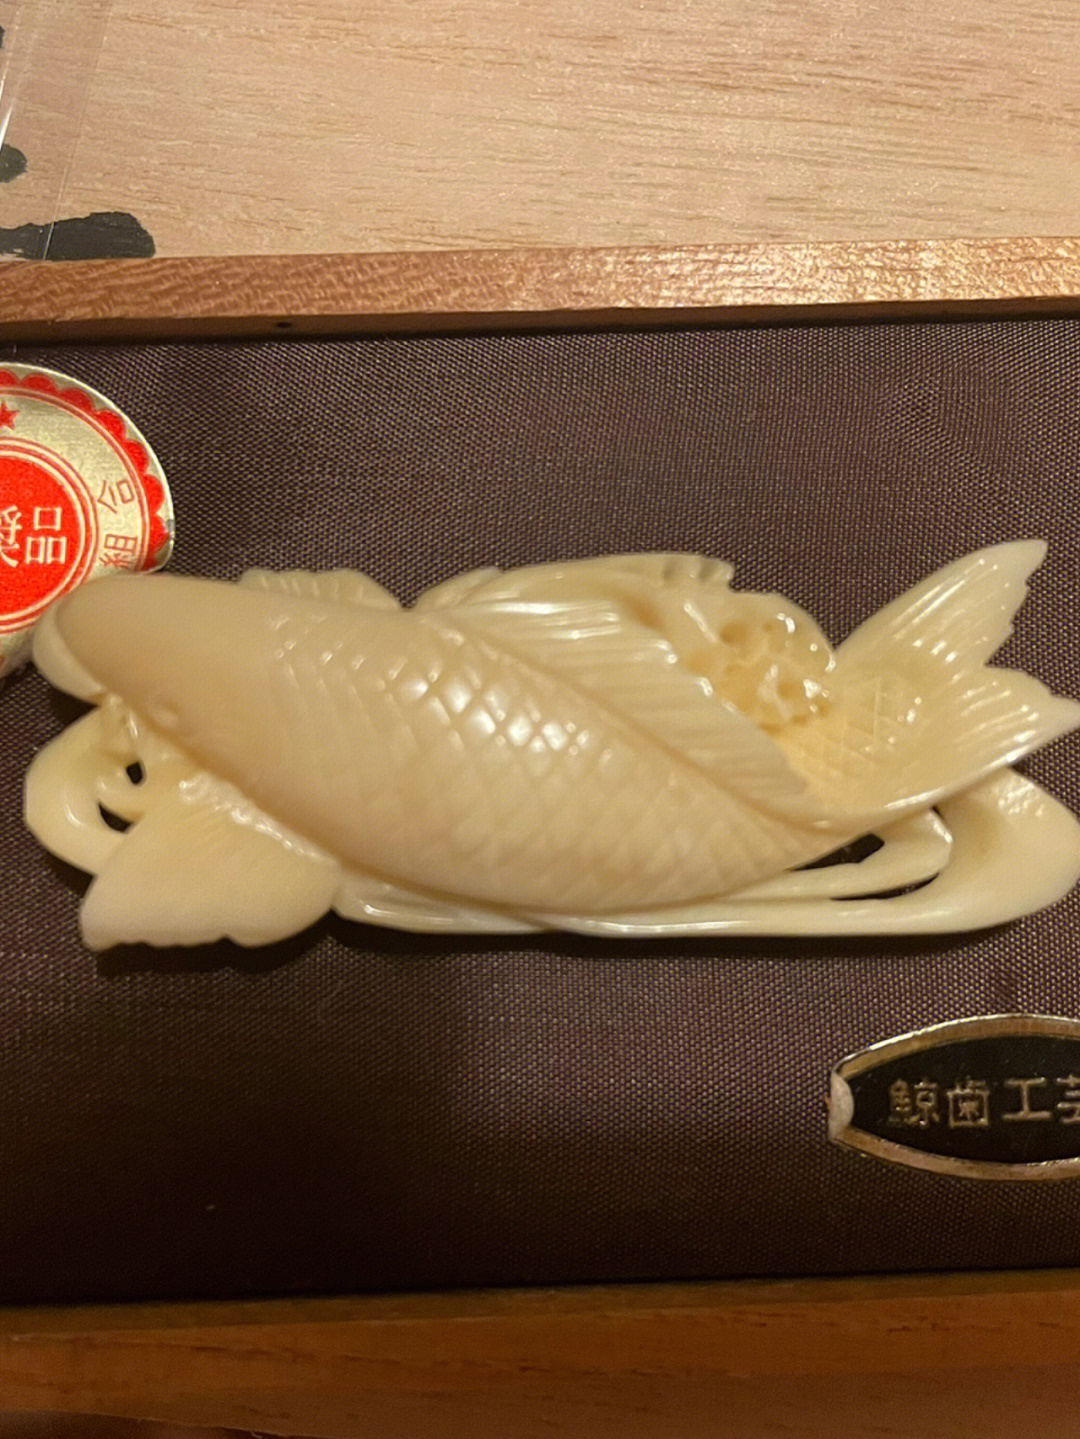 日本的鲸鱼牙雕刻